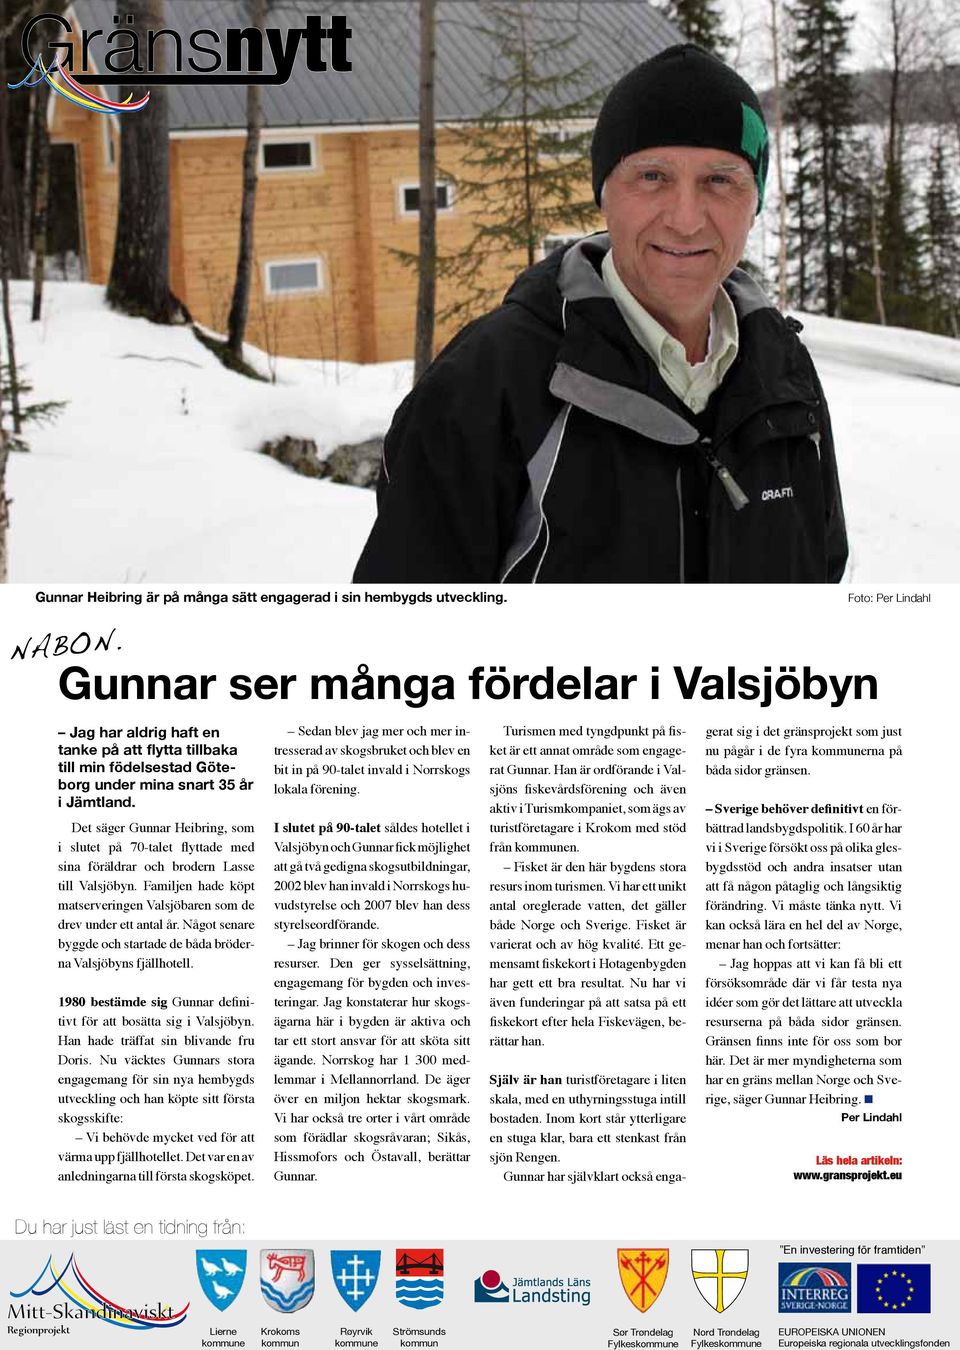 Det säger Gunnar Heibring, som i slutet på 70-talet flyttade med sina föräldrar och brodern Lasse till Valsjöbyn. Familjen hade köpt matserveringen Valsjöbaren som de drev under ett antal år.